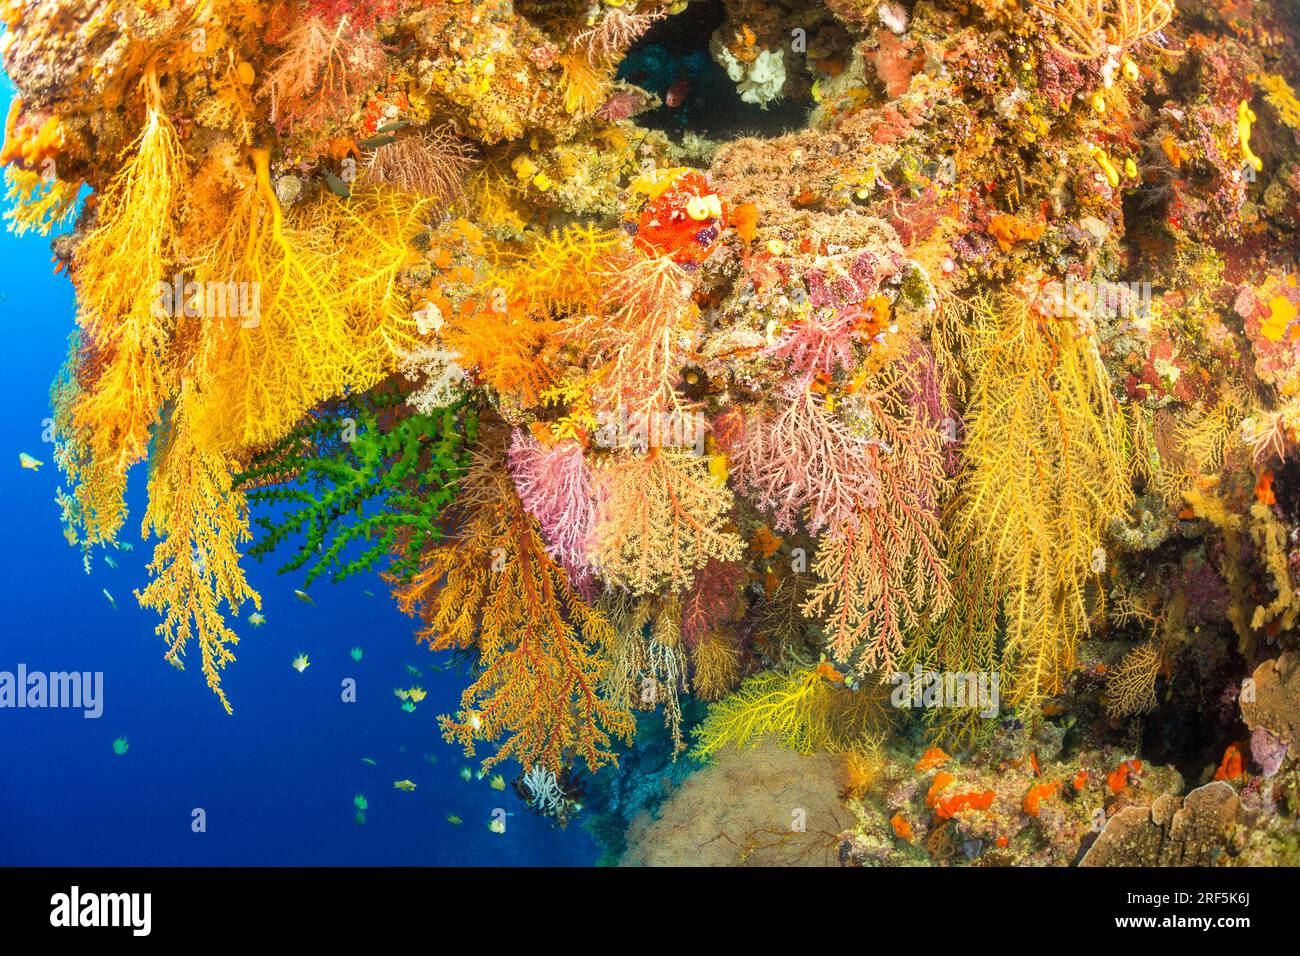 Les coraux alconariens et gorgonia dominent cette scène de récif fidjien. Banque D'Images